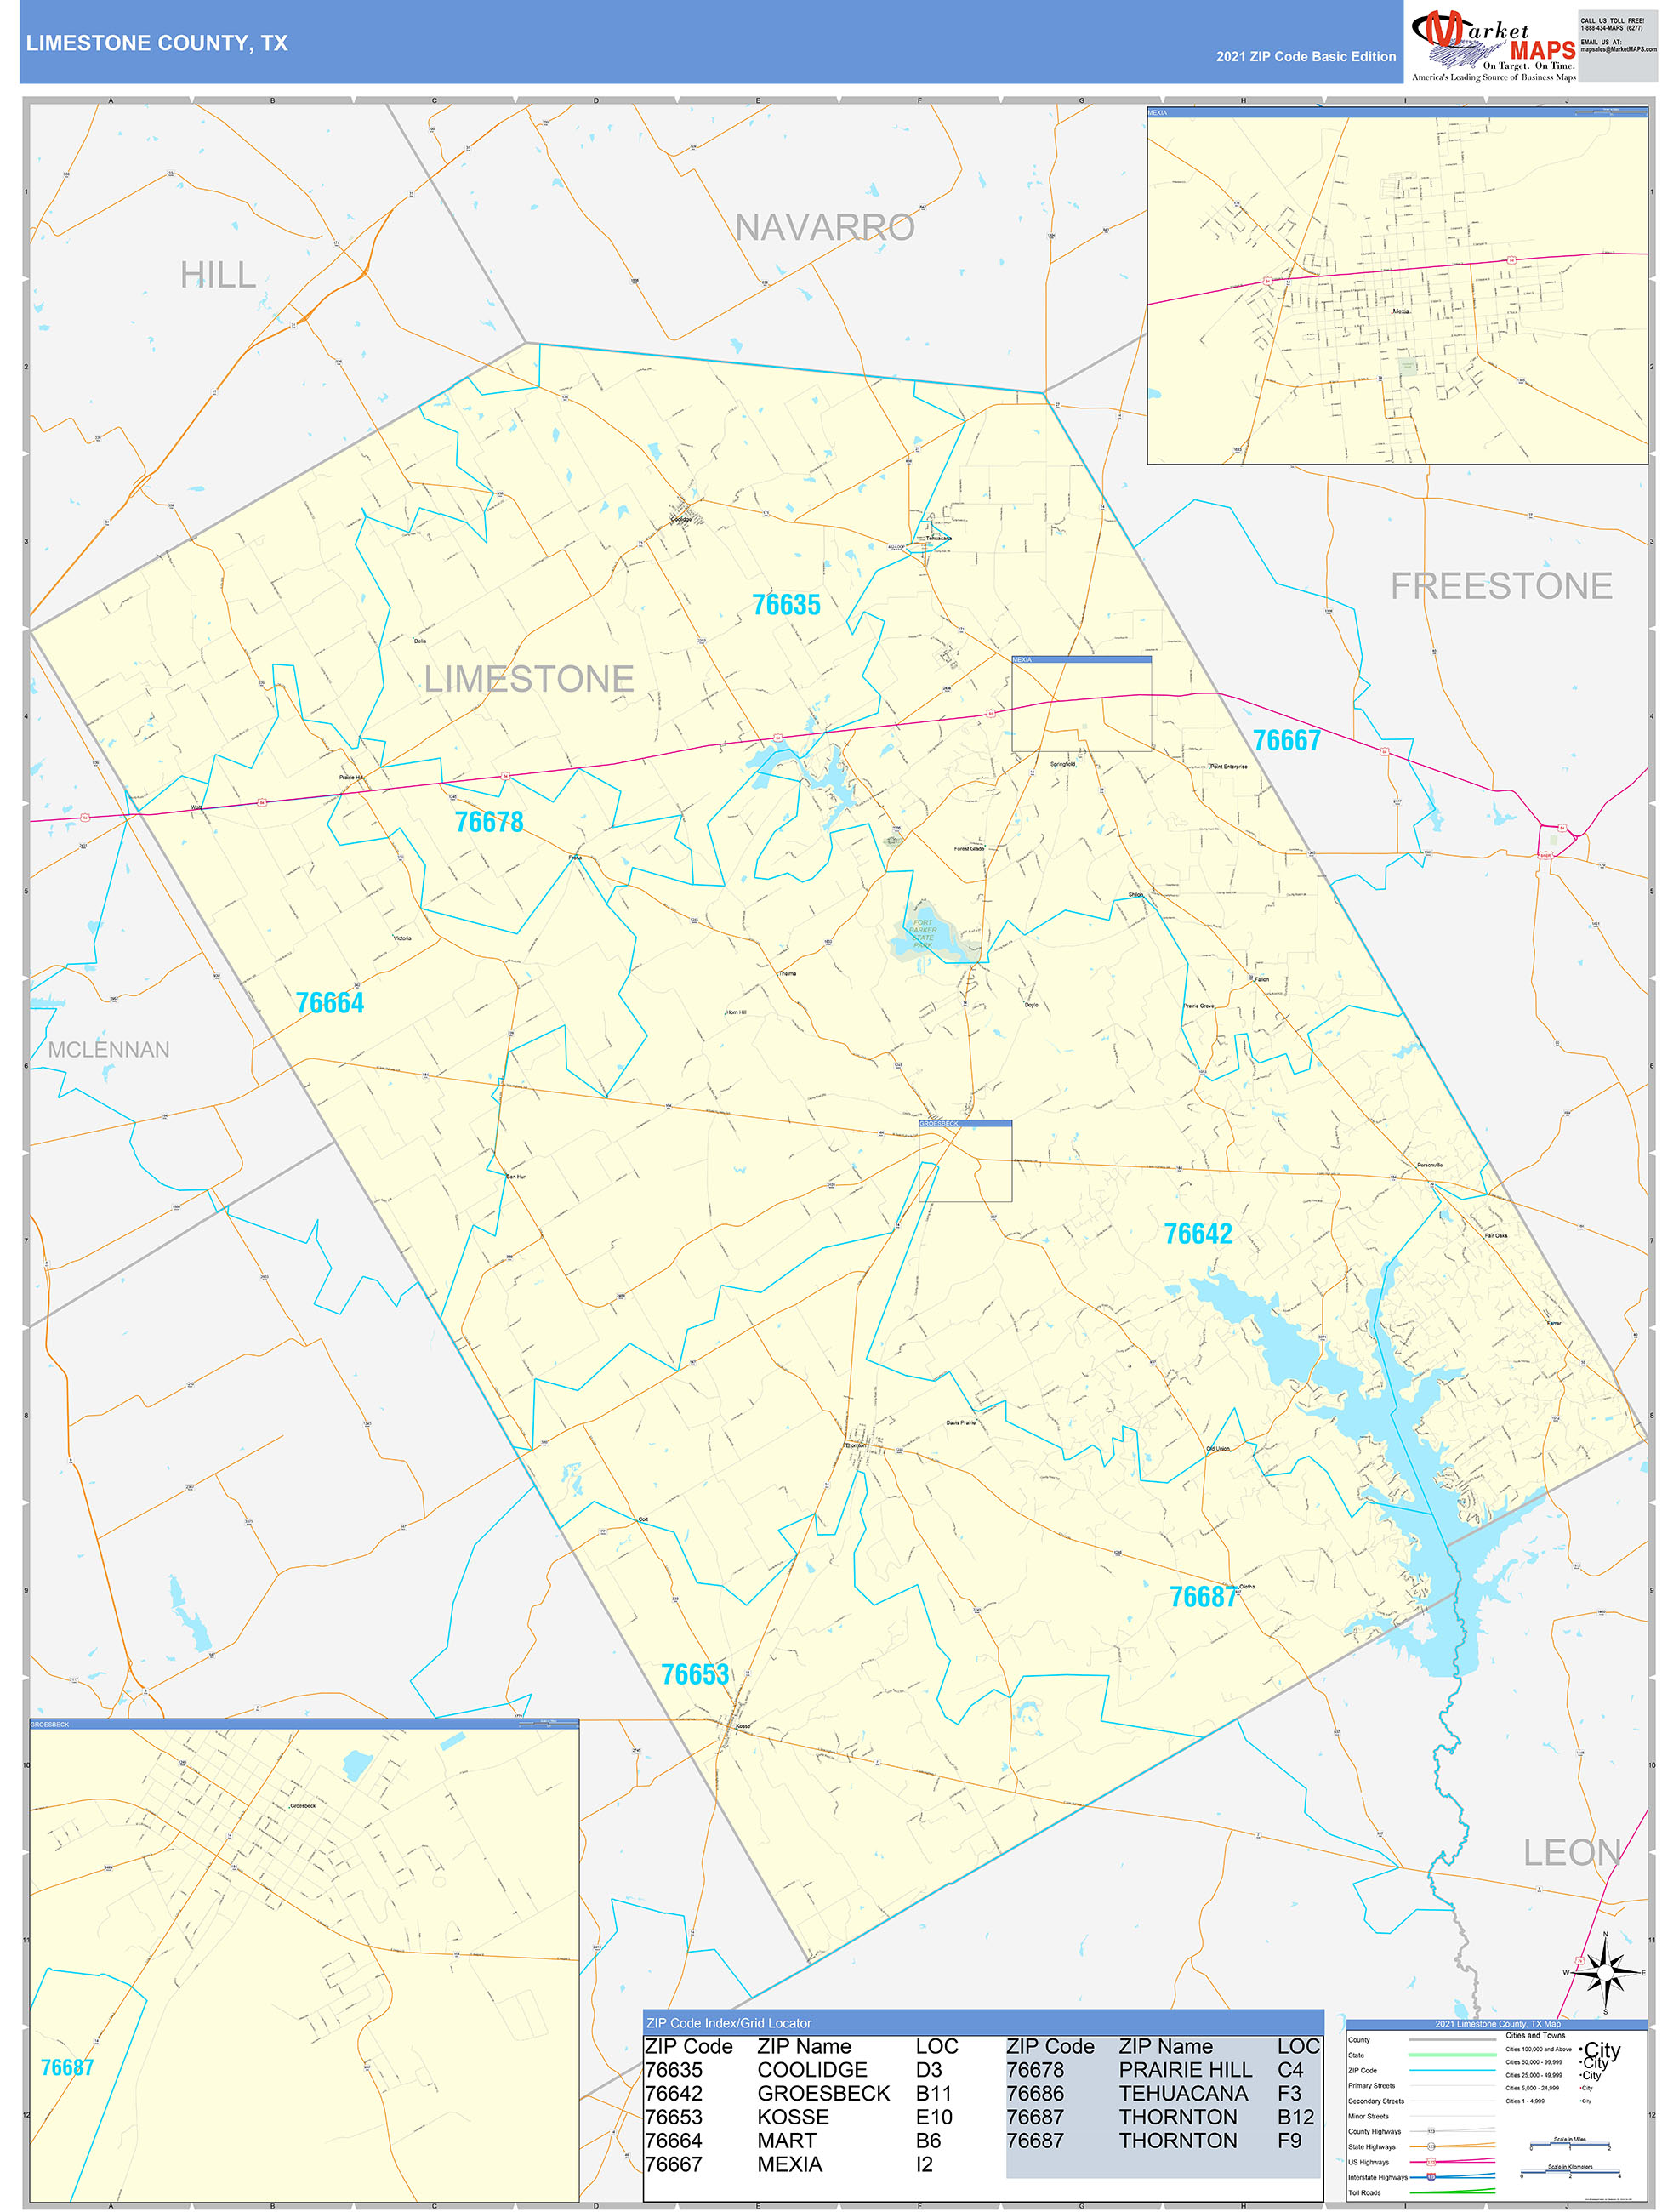 Limestone County, TX Zip Code Wall Map Basic Style by MarketMAPS - MapSales